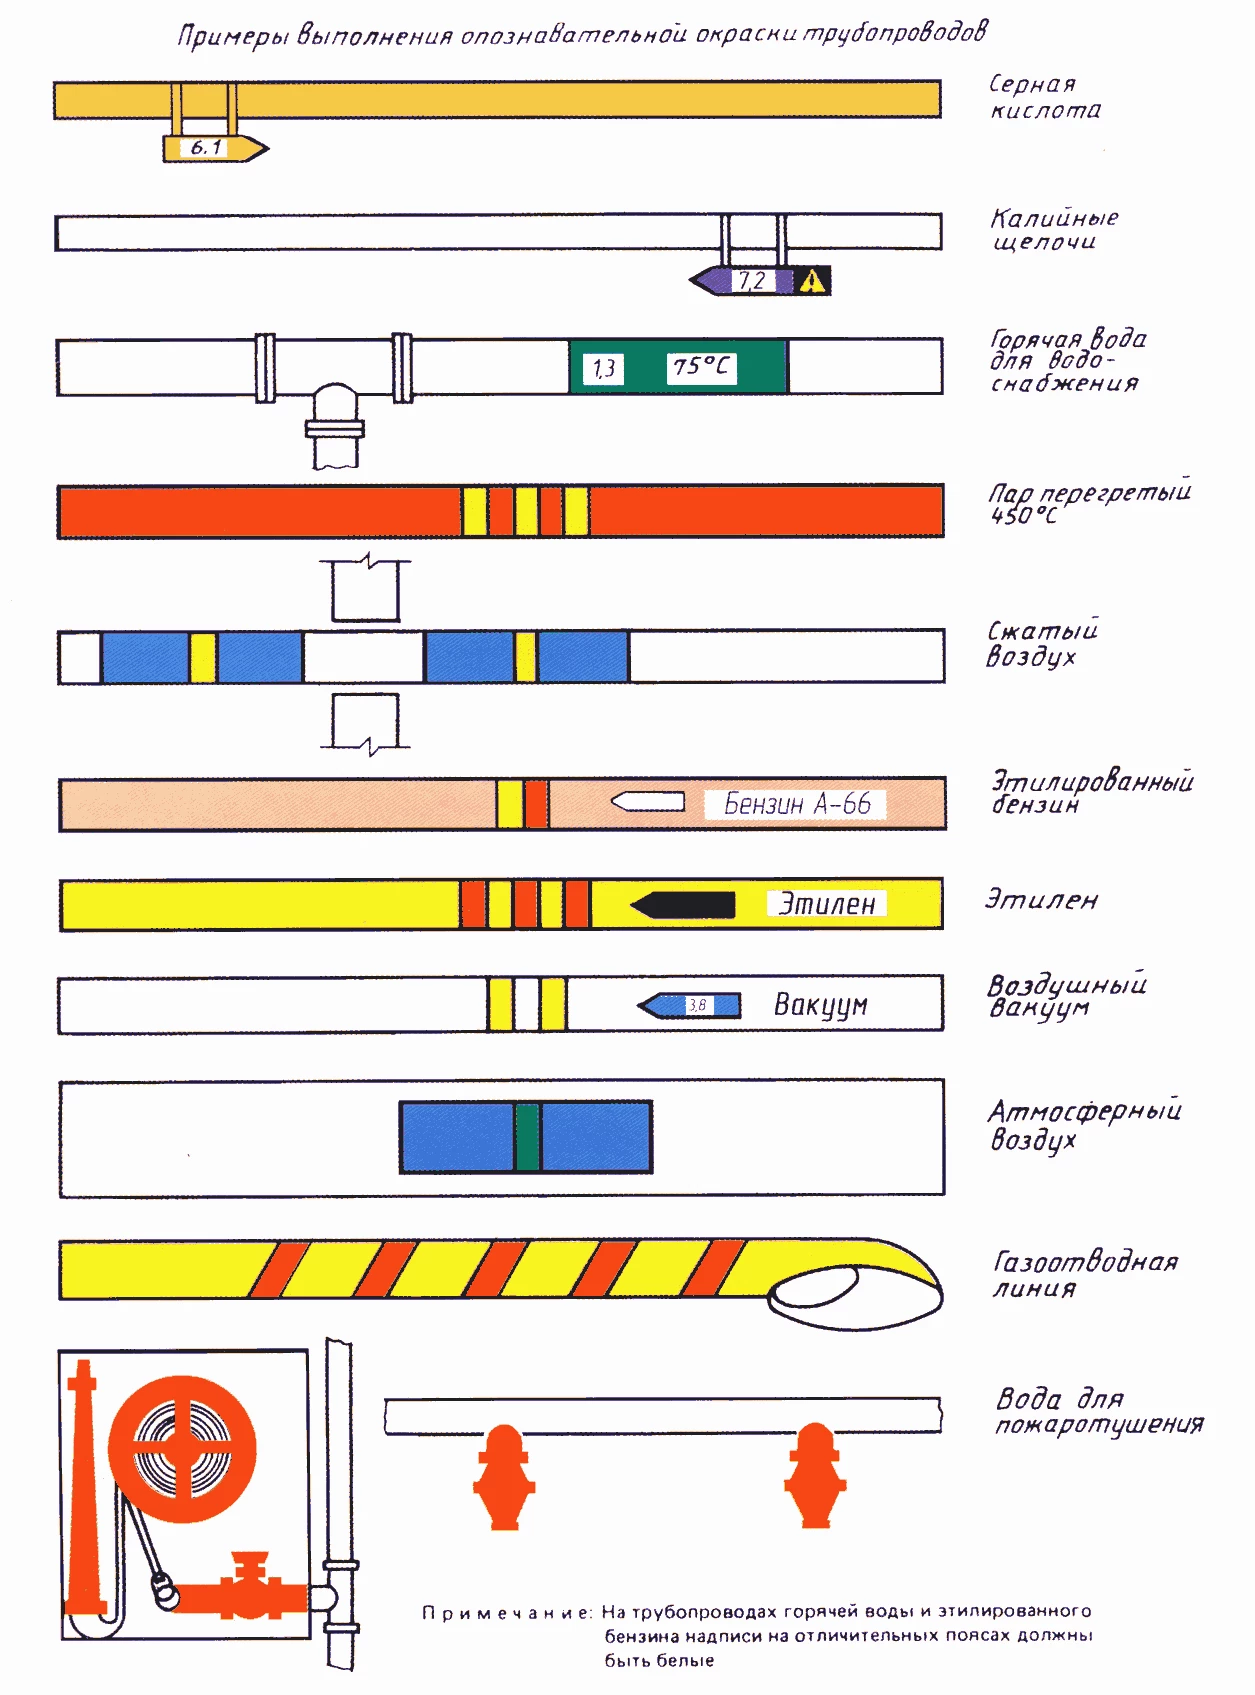 Правила цветовой индикации трубопроводов согласно ГОСТ 14202-69